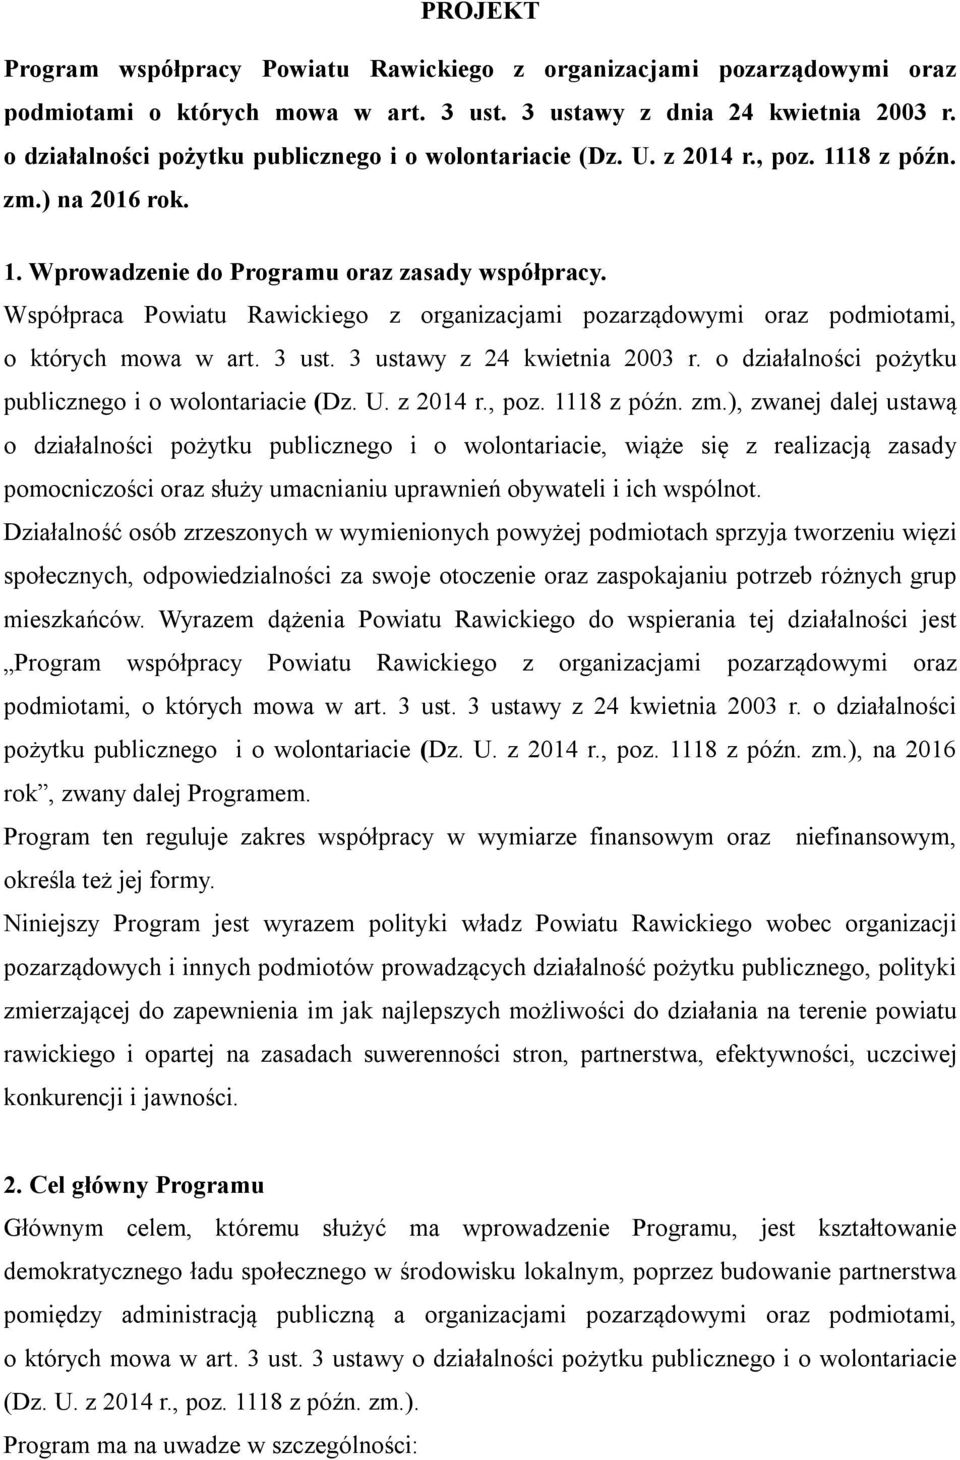 Współpraca Powiatu Rawickiego z organizacjami pozarządowymi oraz podmiotami, o których mowa w art. 3 ust. 3 ustawy z 24 kwietnia 2003 r. o działalności pożytku publicznego i o wolontariacie (Dz. U.